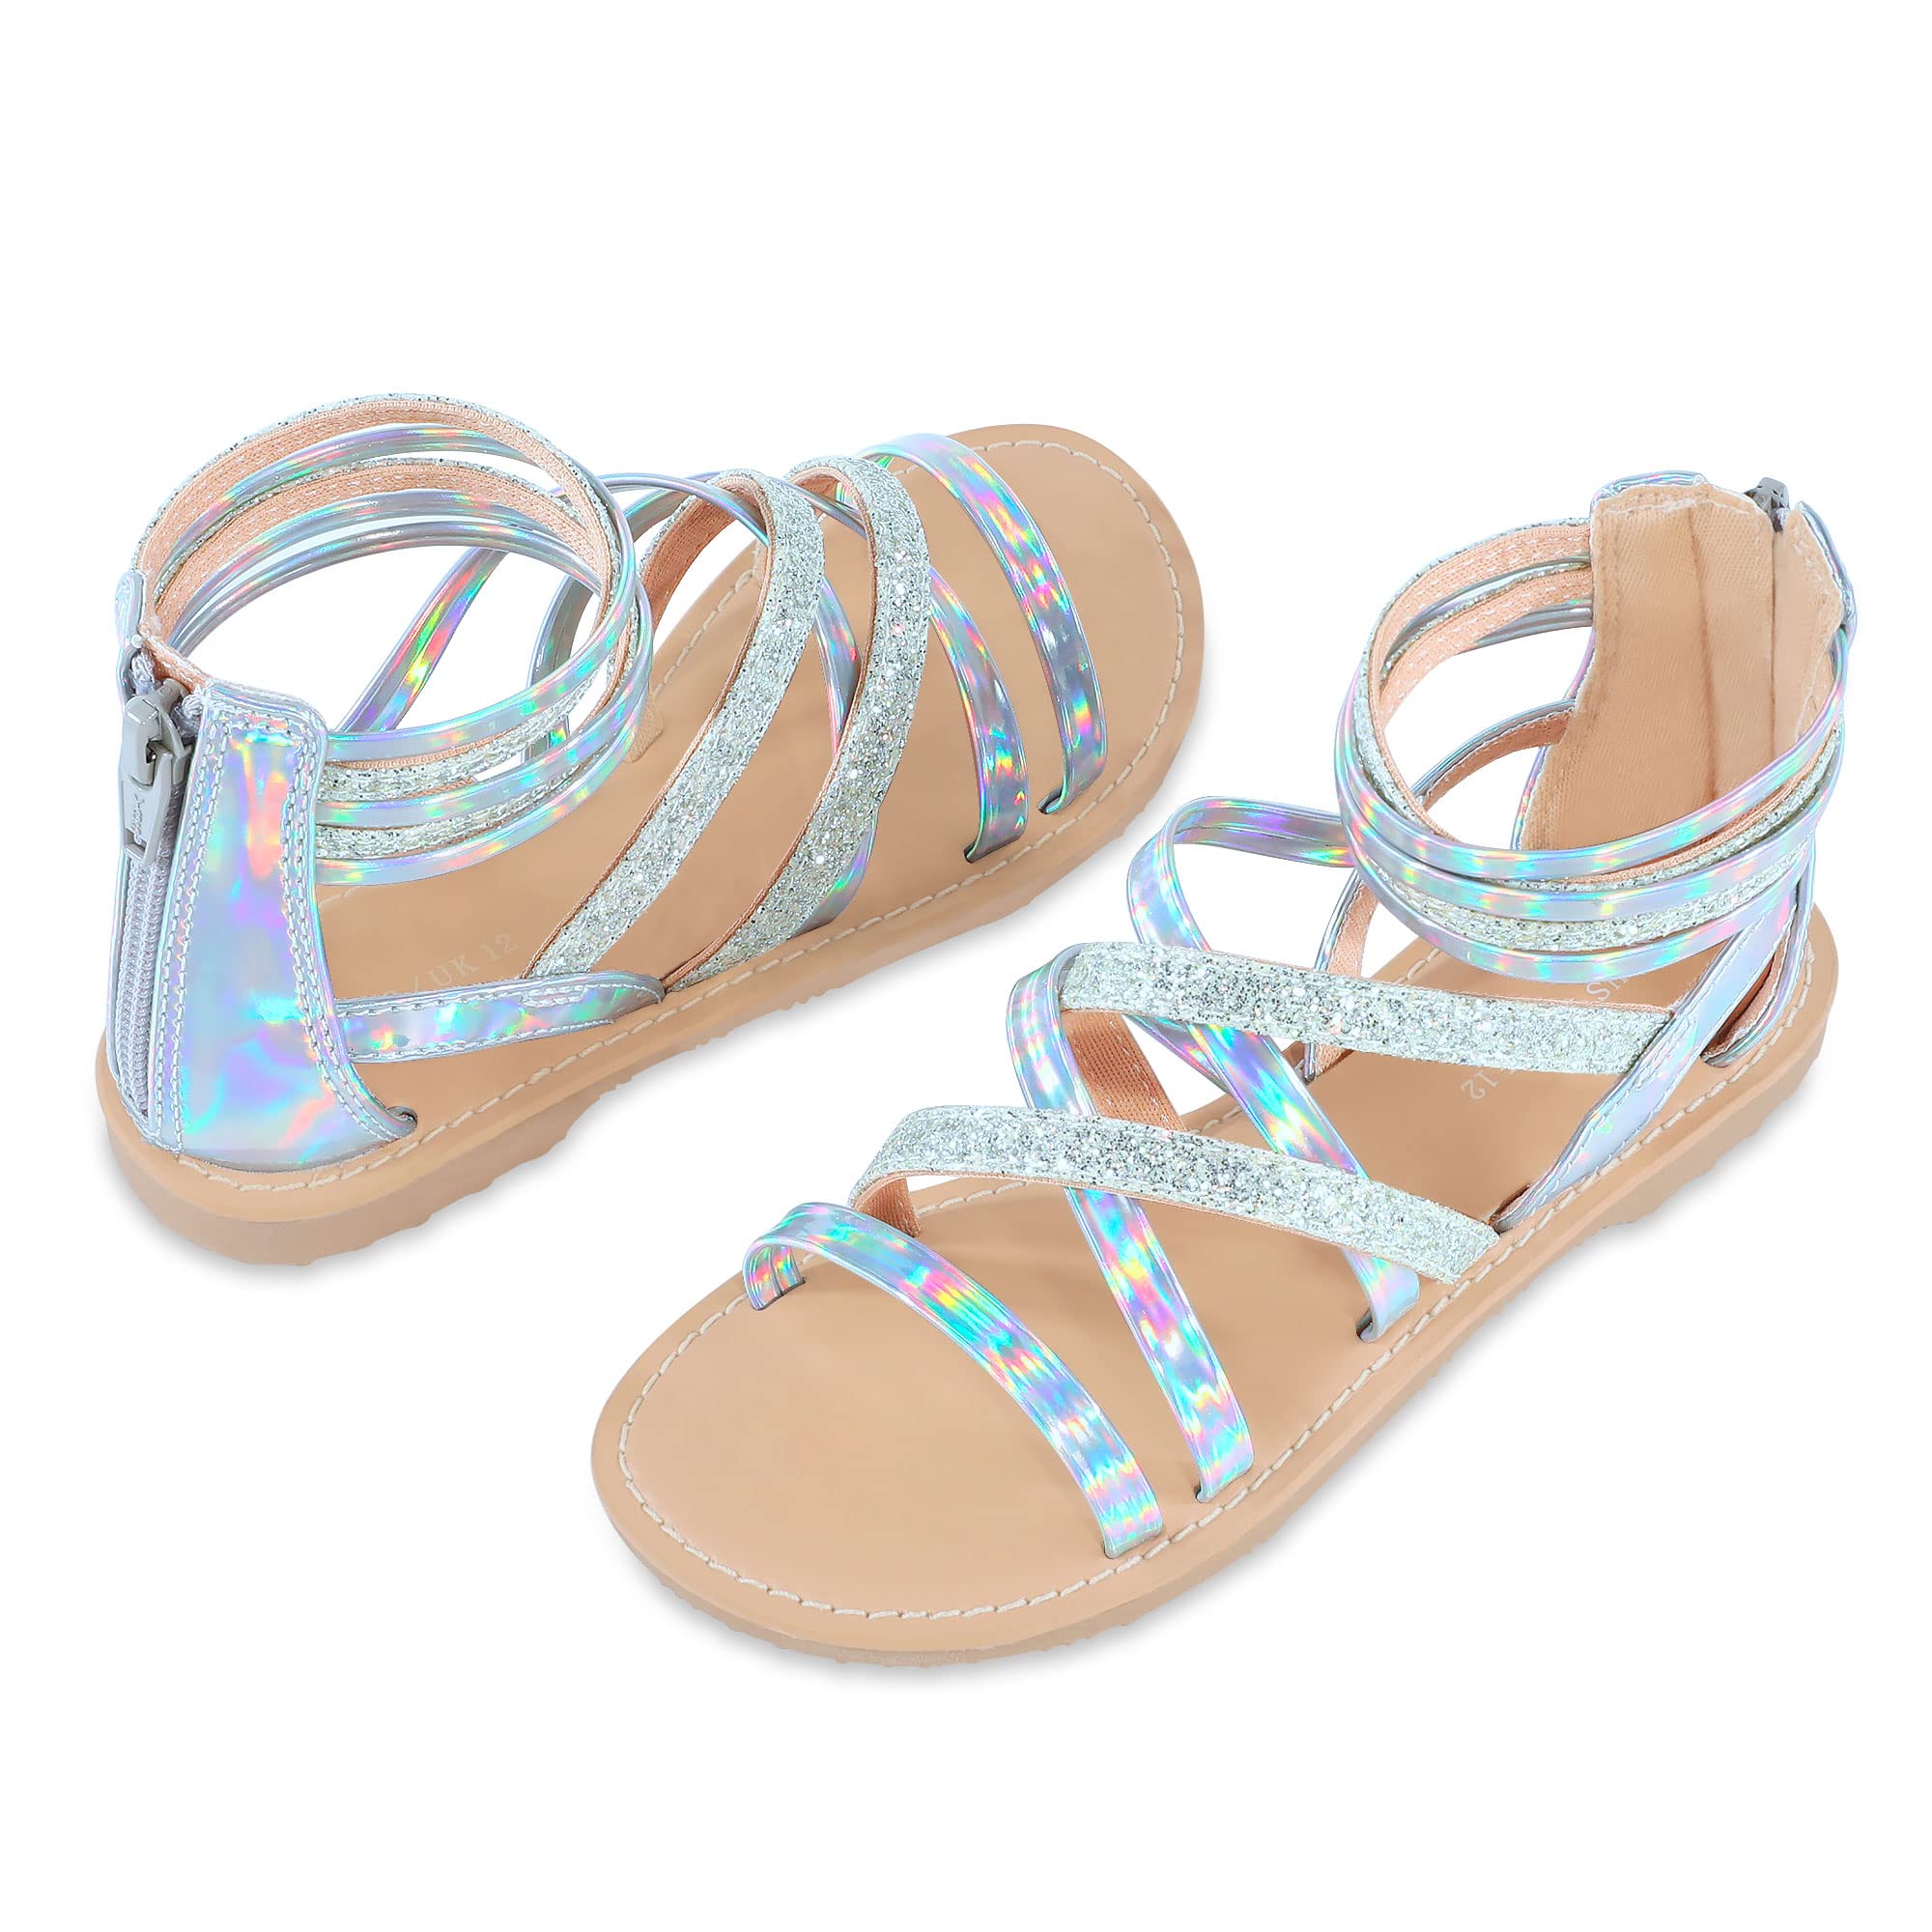 shoeslocker Girls Gladiator Sandals Summer Flat Open Toe Shimmer Shoes Strap Ankle Sandals with Back Zipper for Little Kids Big Kids